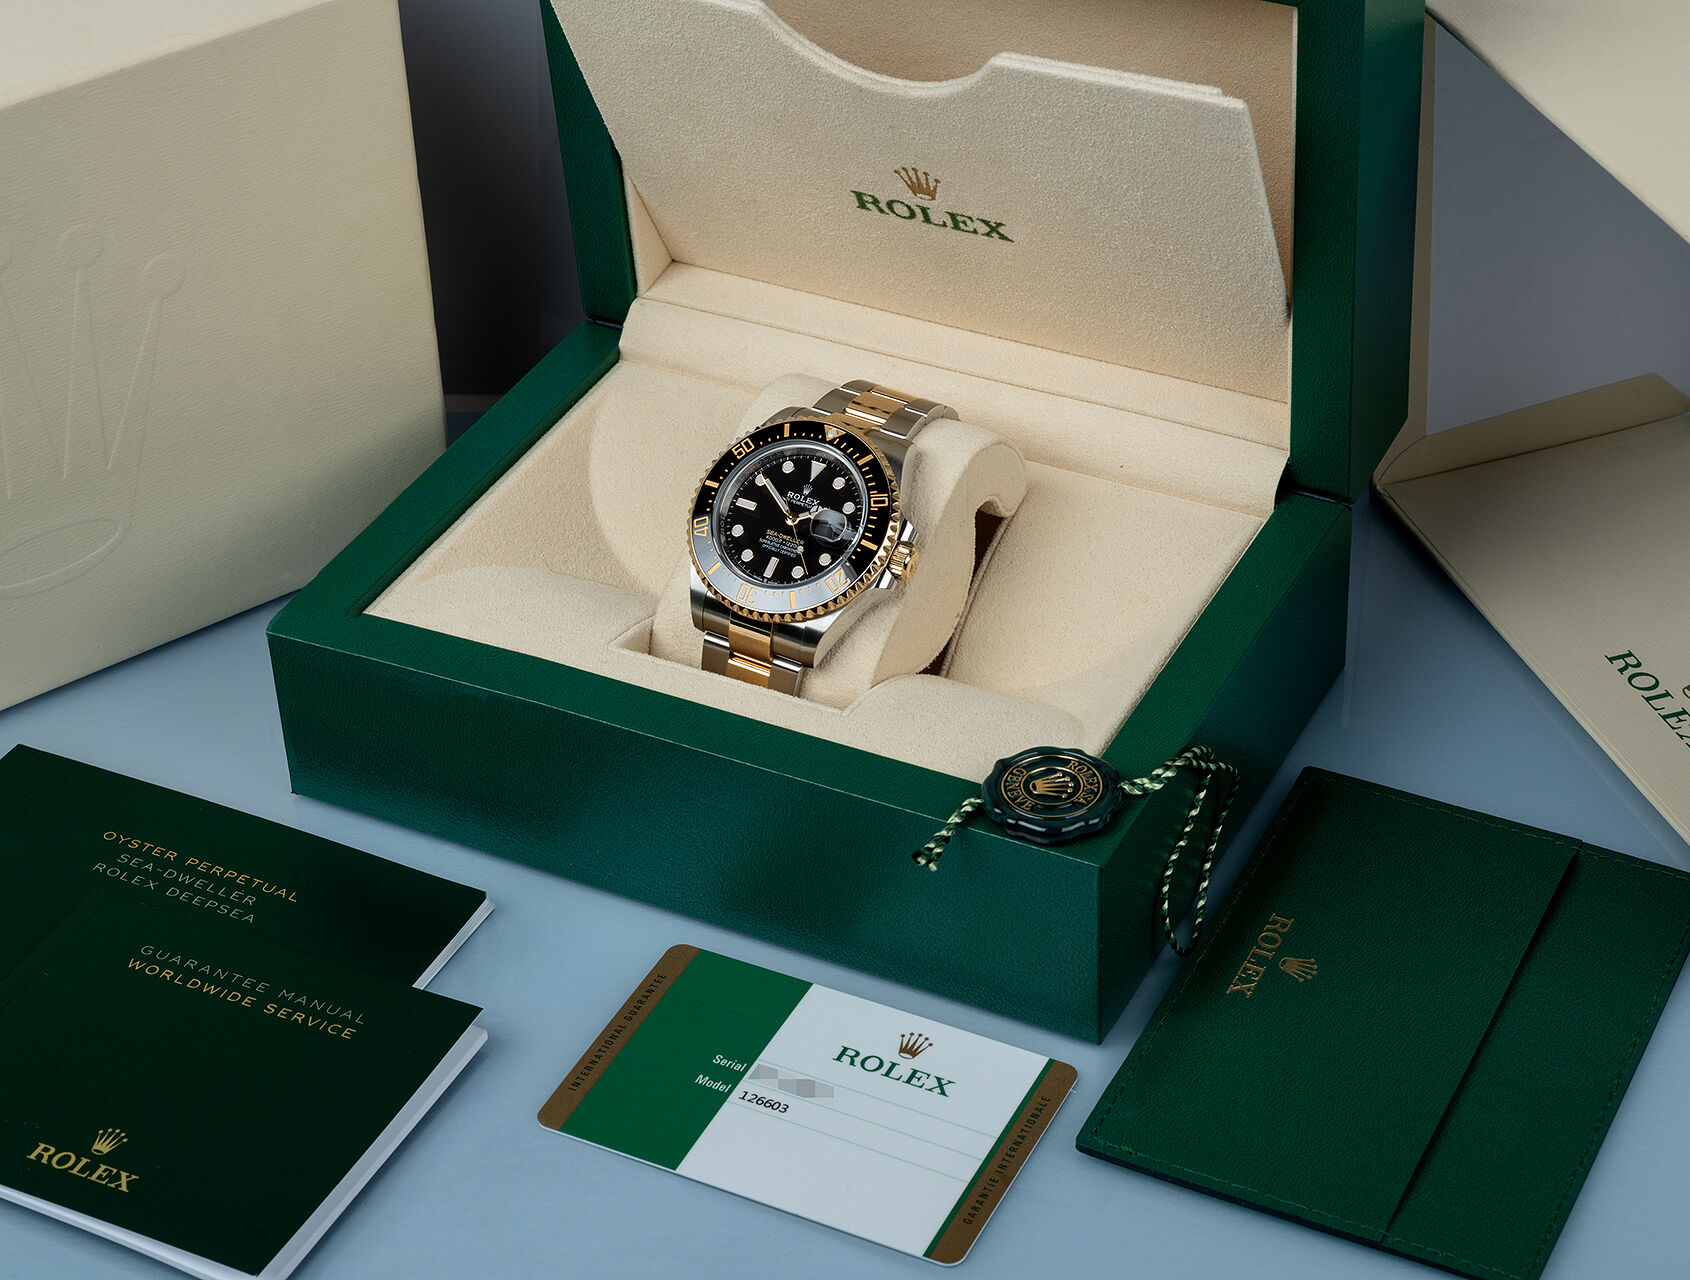 ref 126603 | 126603 - Box & Certificate | Rolex Sea-Dweller